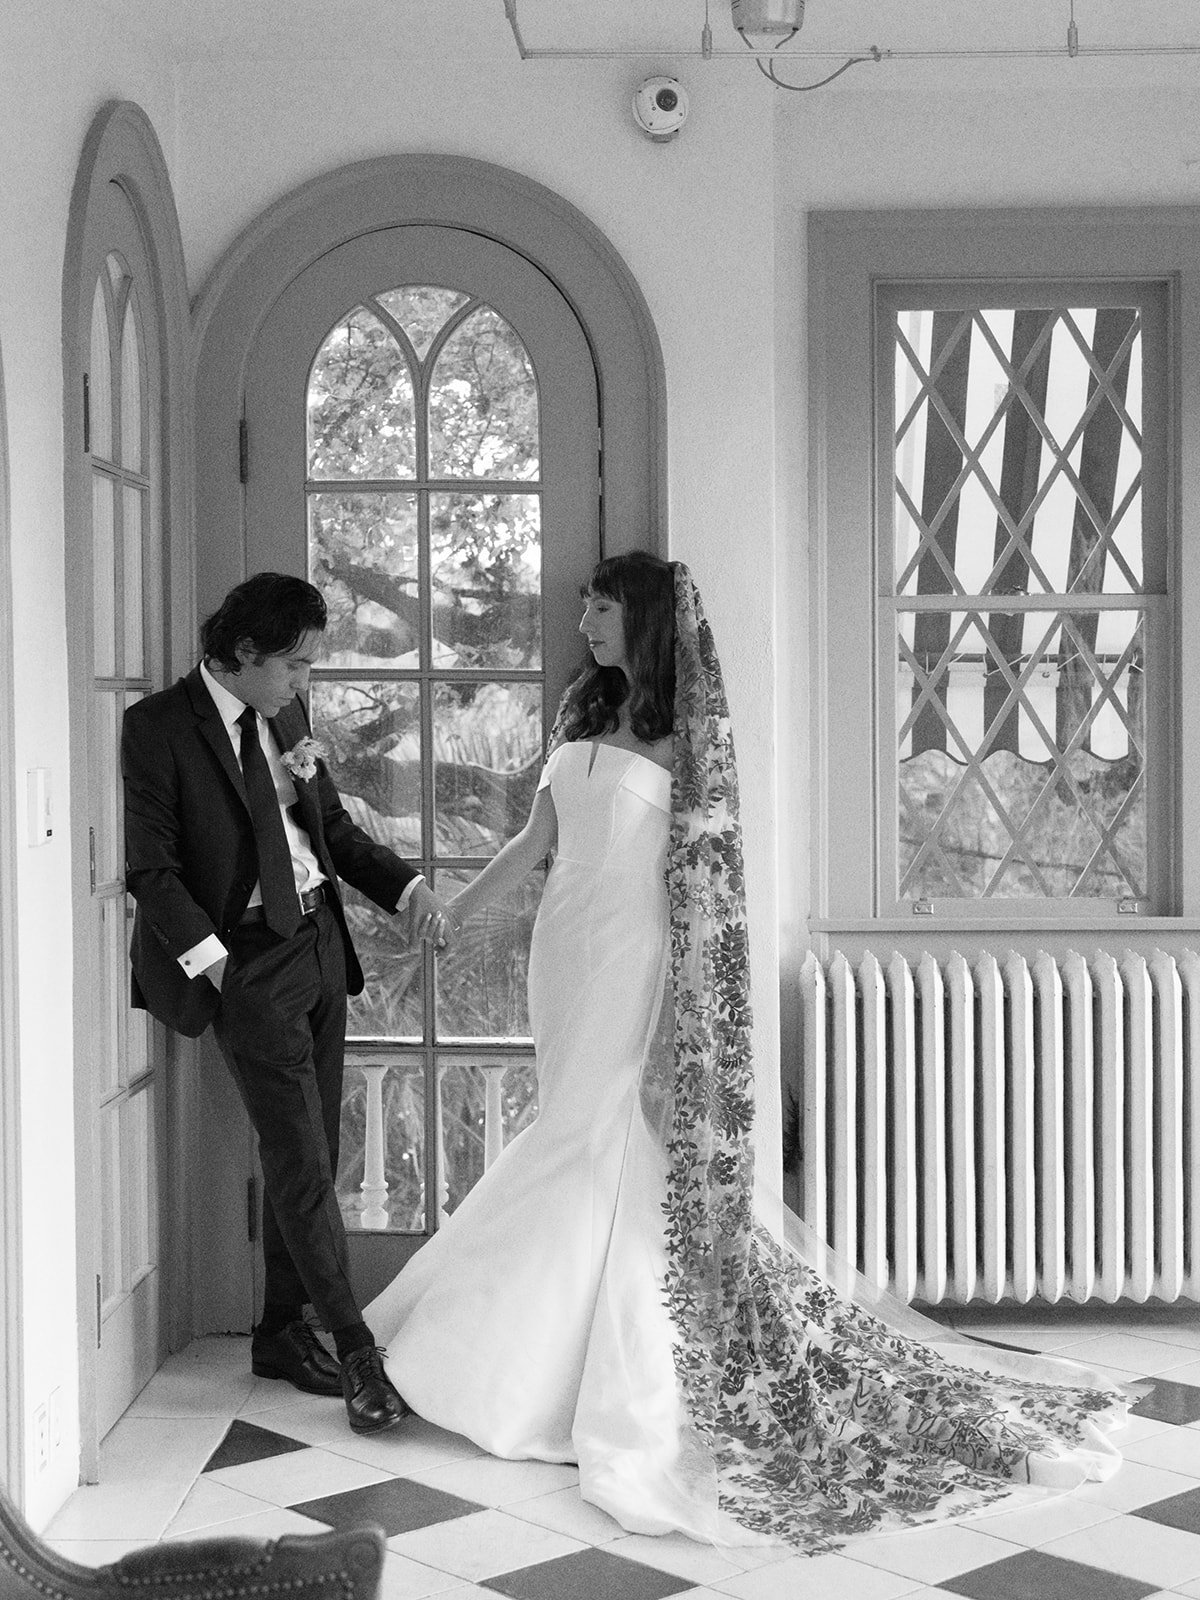 Best-Austin-Wedding-Photographers-Elopement-Film-35mm-Asheville-Santa-Barbara-Laguna-Gloria-84.jpg